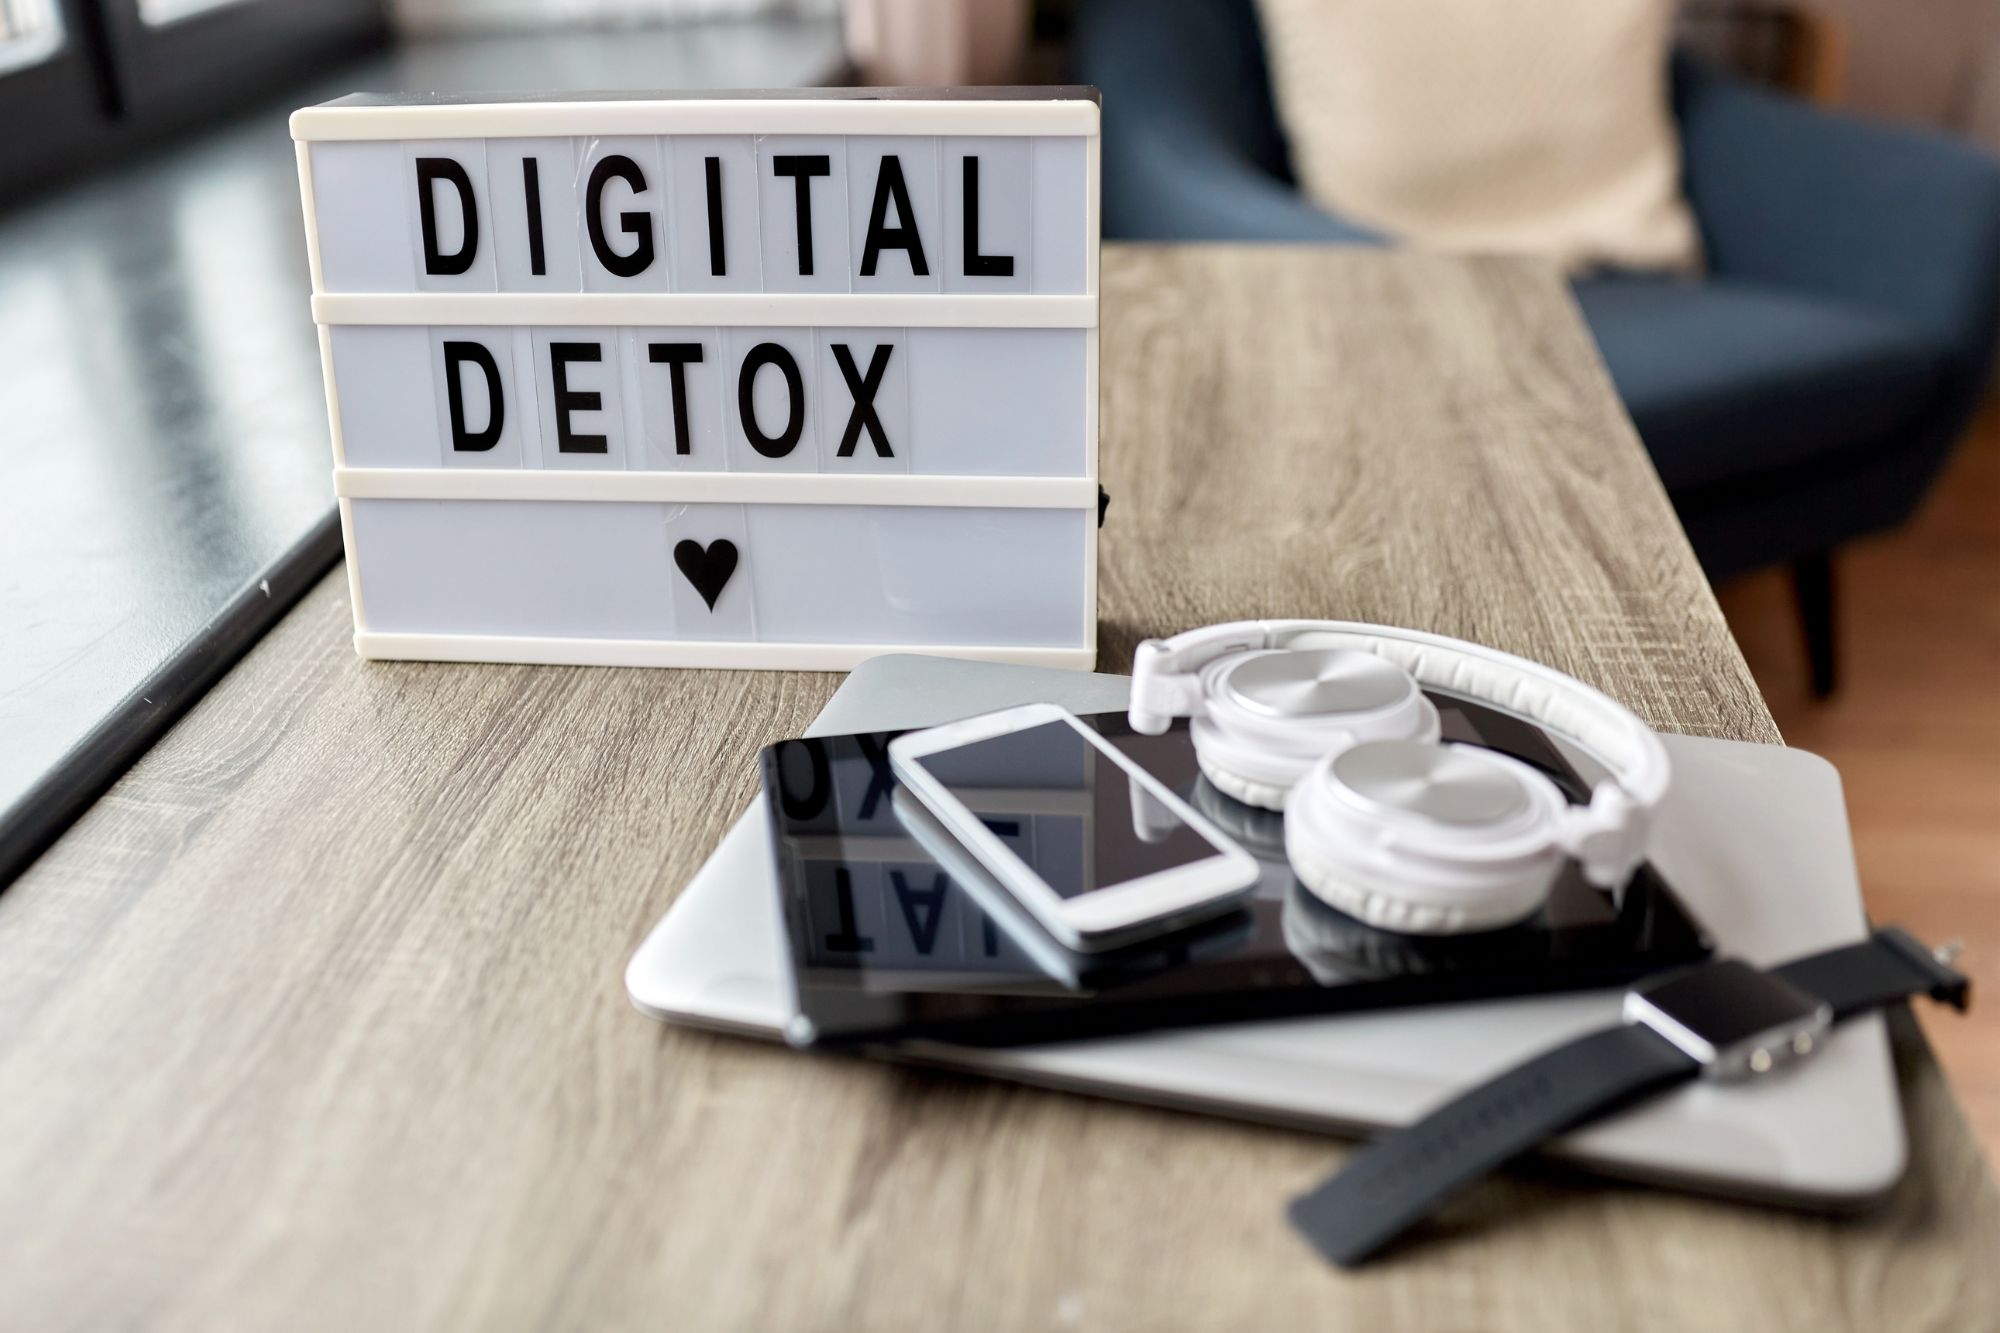 Se entri in questo locale, lascia lo smartphone: il digital detox da Amsterdam a Verona